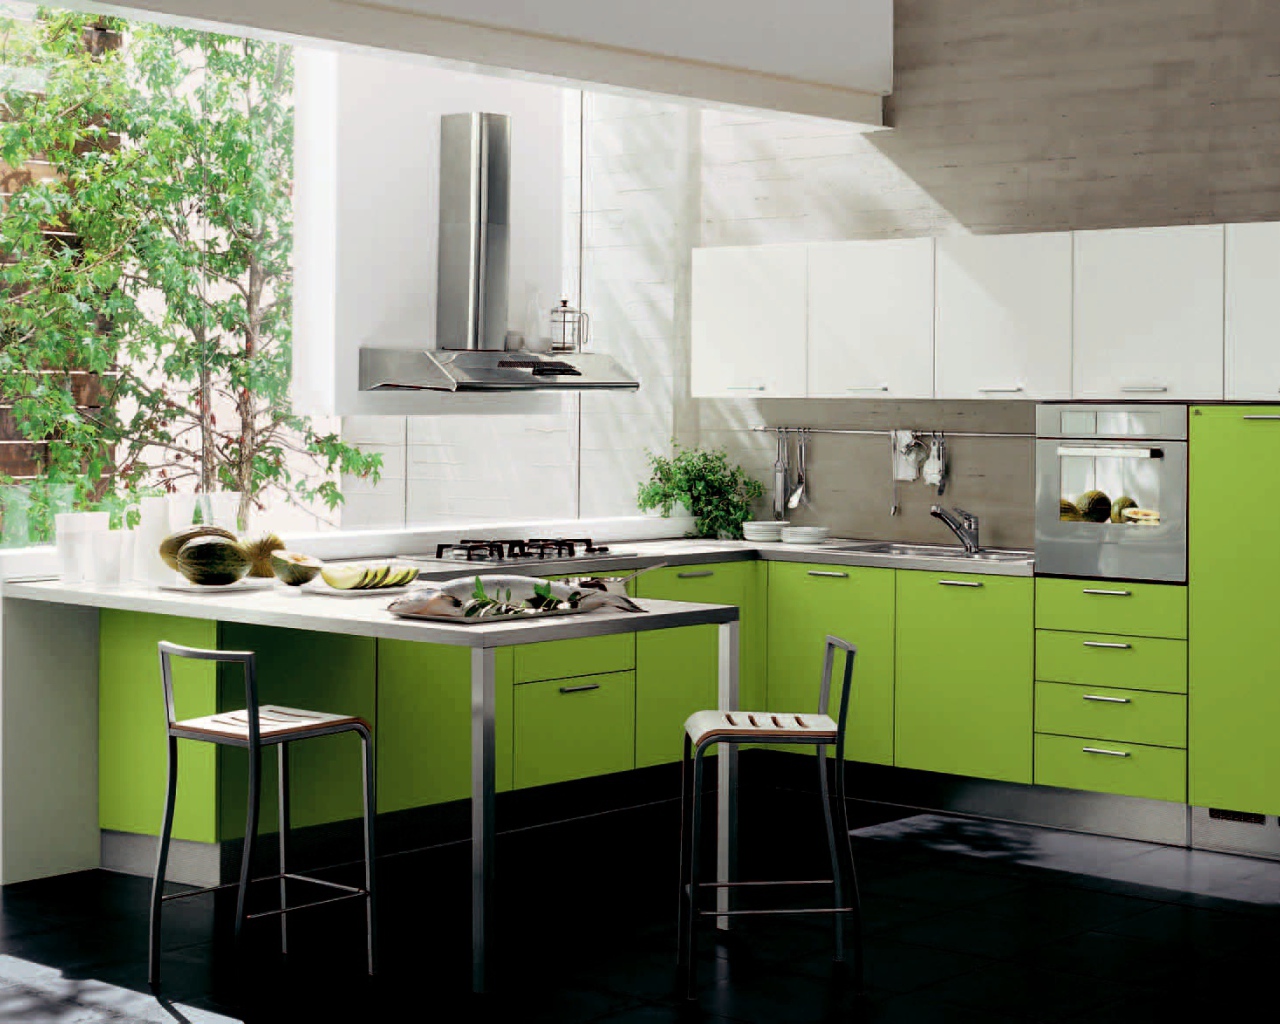 Зелень за окном в кухне